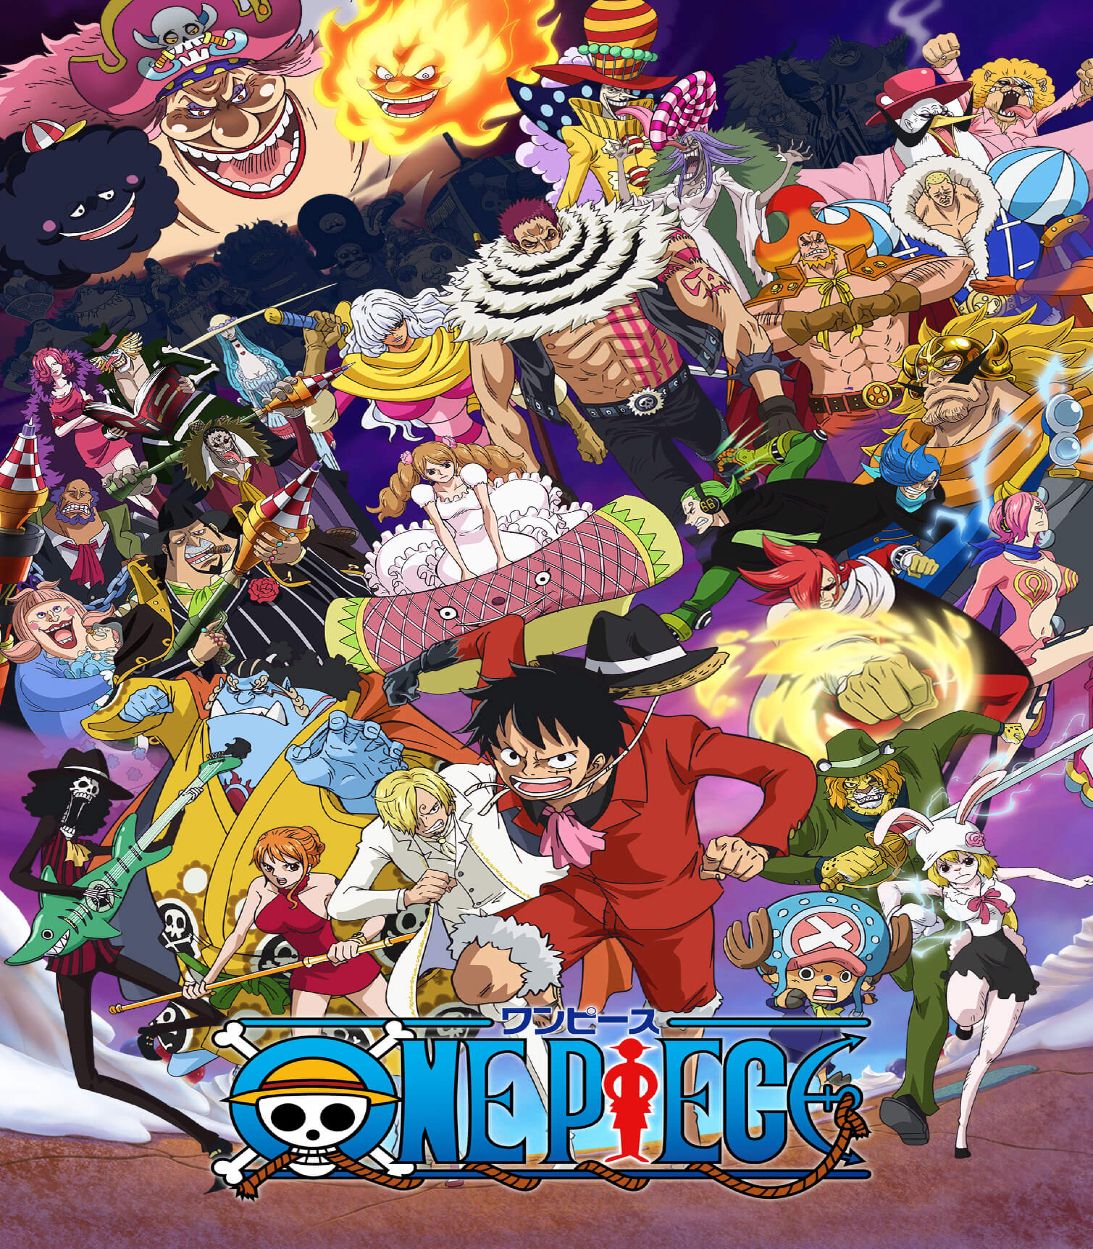 Roronoa Zoro Receives Official One Piece Prequel